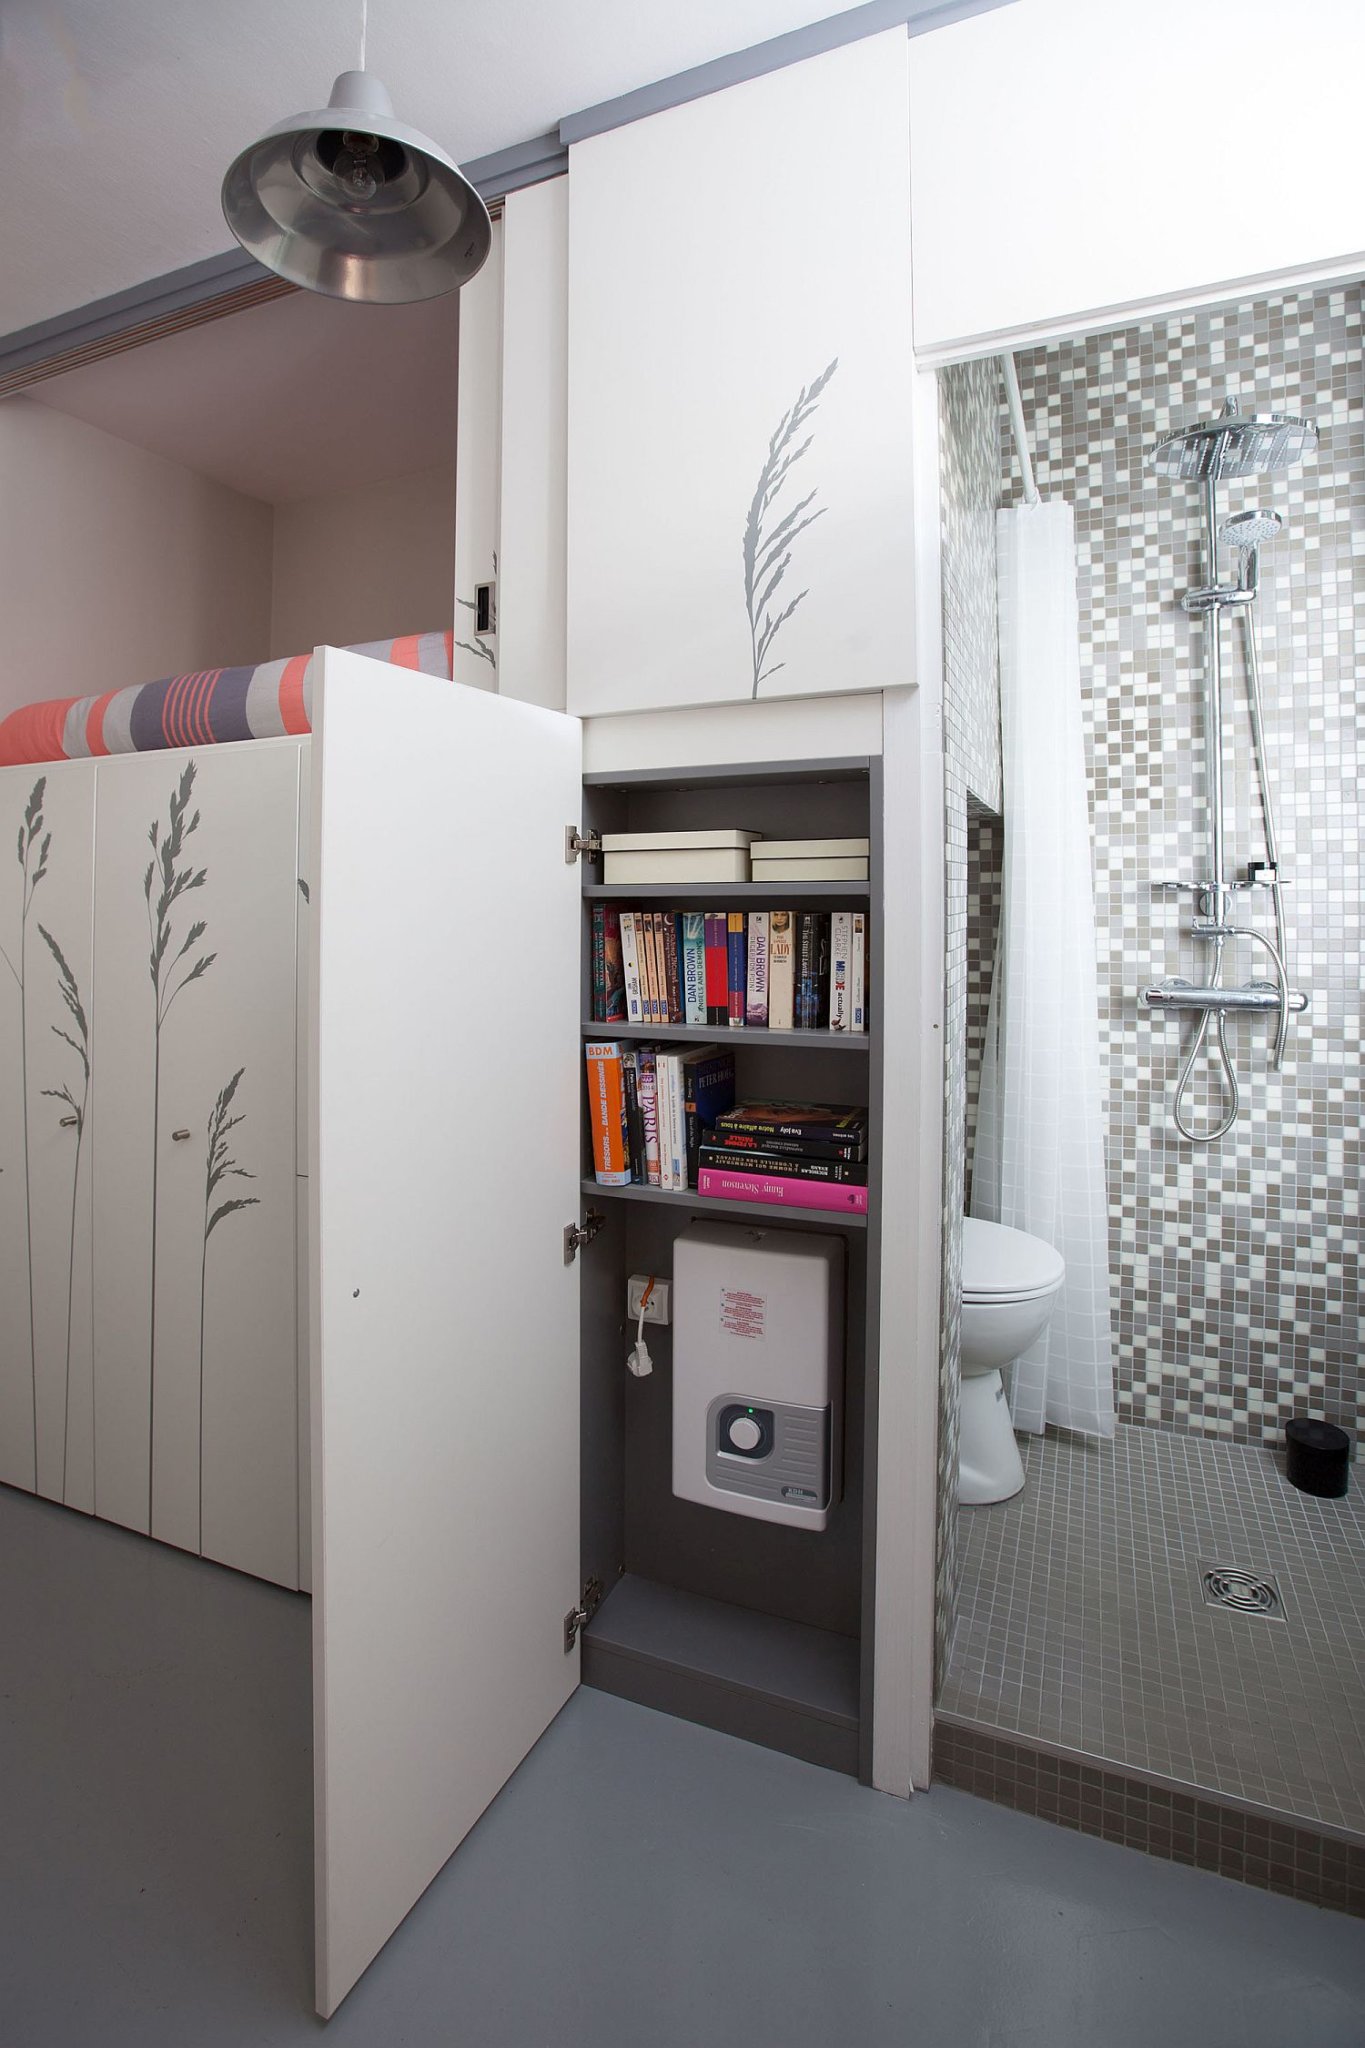 Hình ảnh phòng tắm căn hộ siêu nhỏ với tủ màu trắng phía ngoài đựng sách báo, hộp kỹ thuật